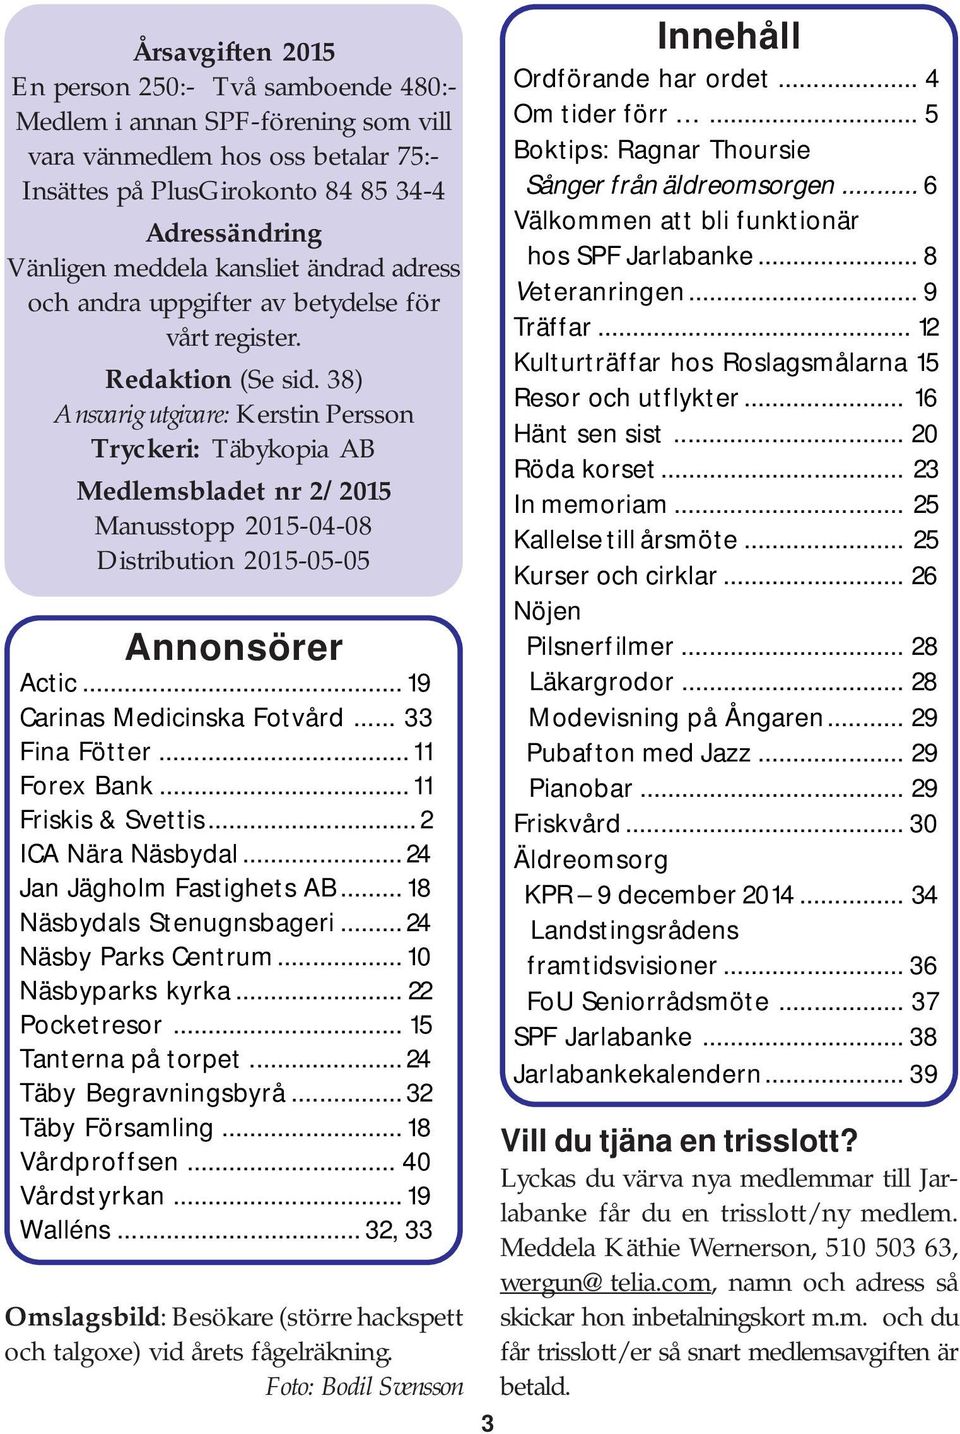 38) Ansvarig utgivare: Kerstin Persson Tryckeri: Täbykopia AB Medlemsbladet nr 2/2015 Manusstopp 2015-04-08 Distribution 2015-05-05 Annonsörer Actic... 19 Carinas Medicinska Fotvård... 33 Fina Fötter.